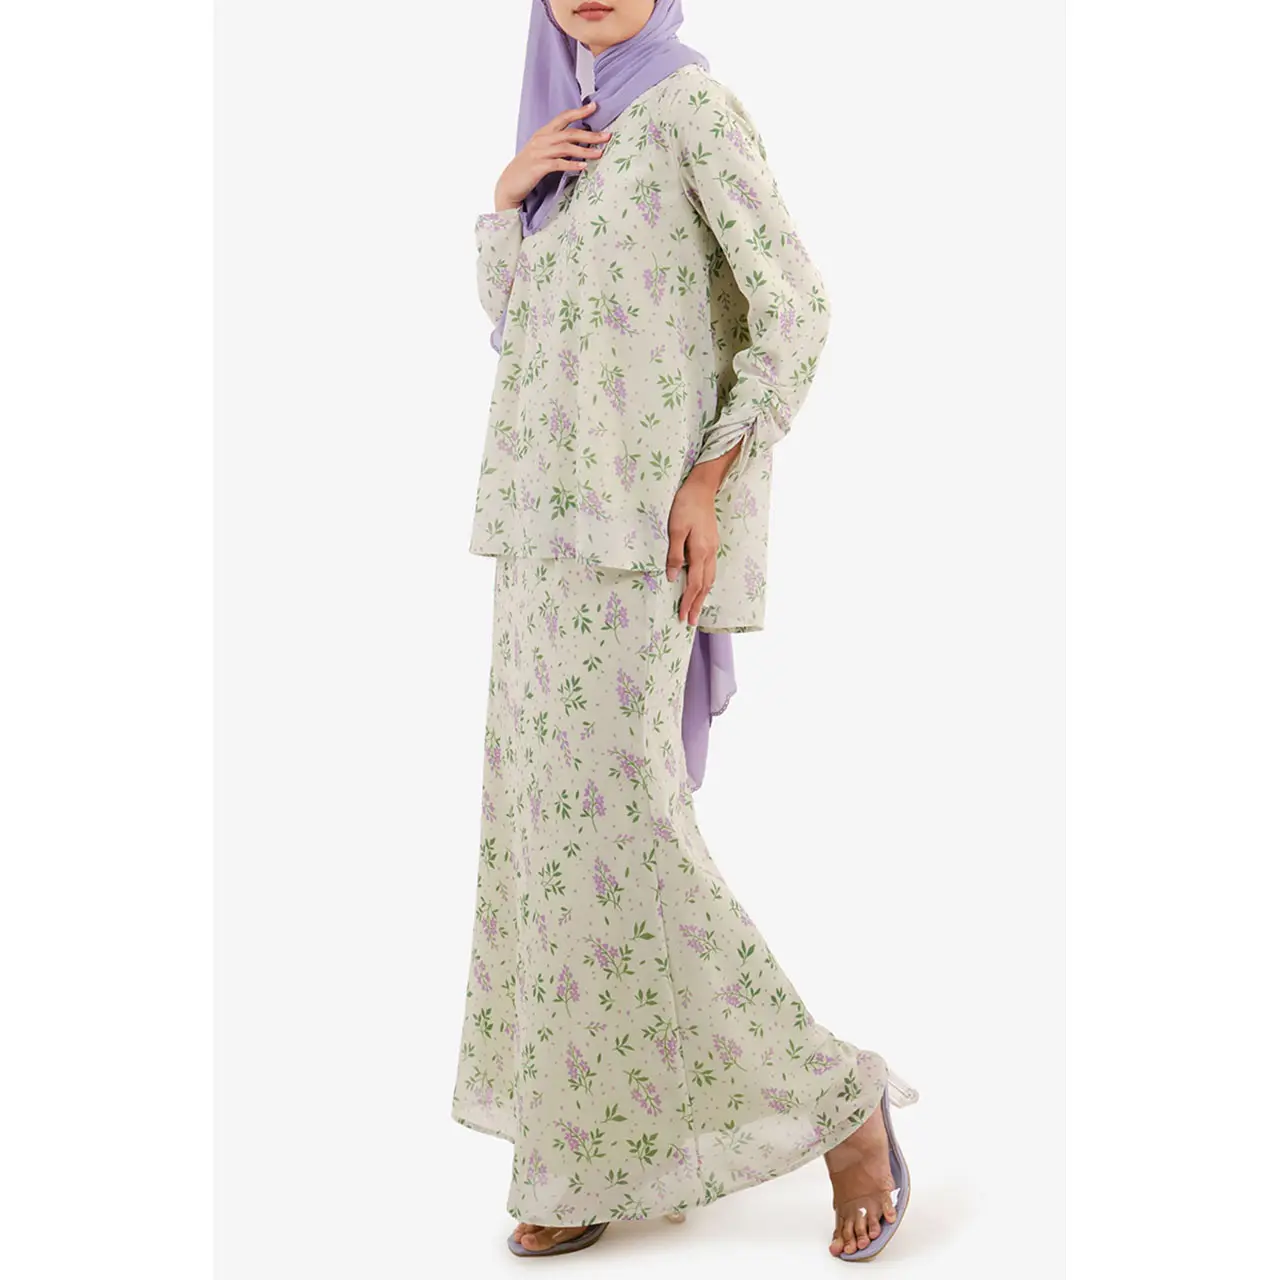 Hàng Mới Về Chất Lượng Cao Baju Thời Trang Hiện Đại Mới Nhất Baju Wanita Baju Kurung Malaysia